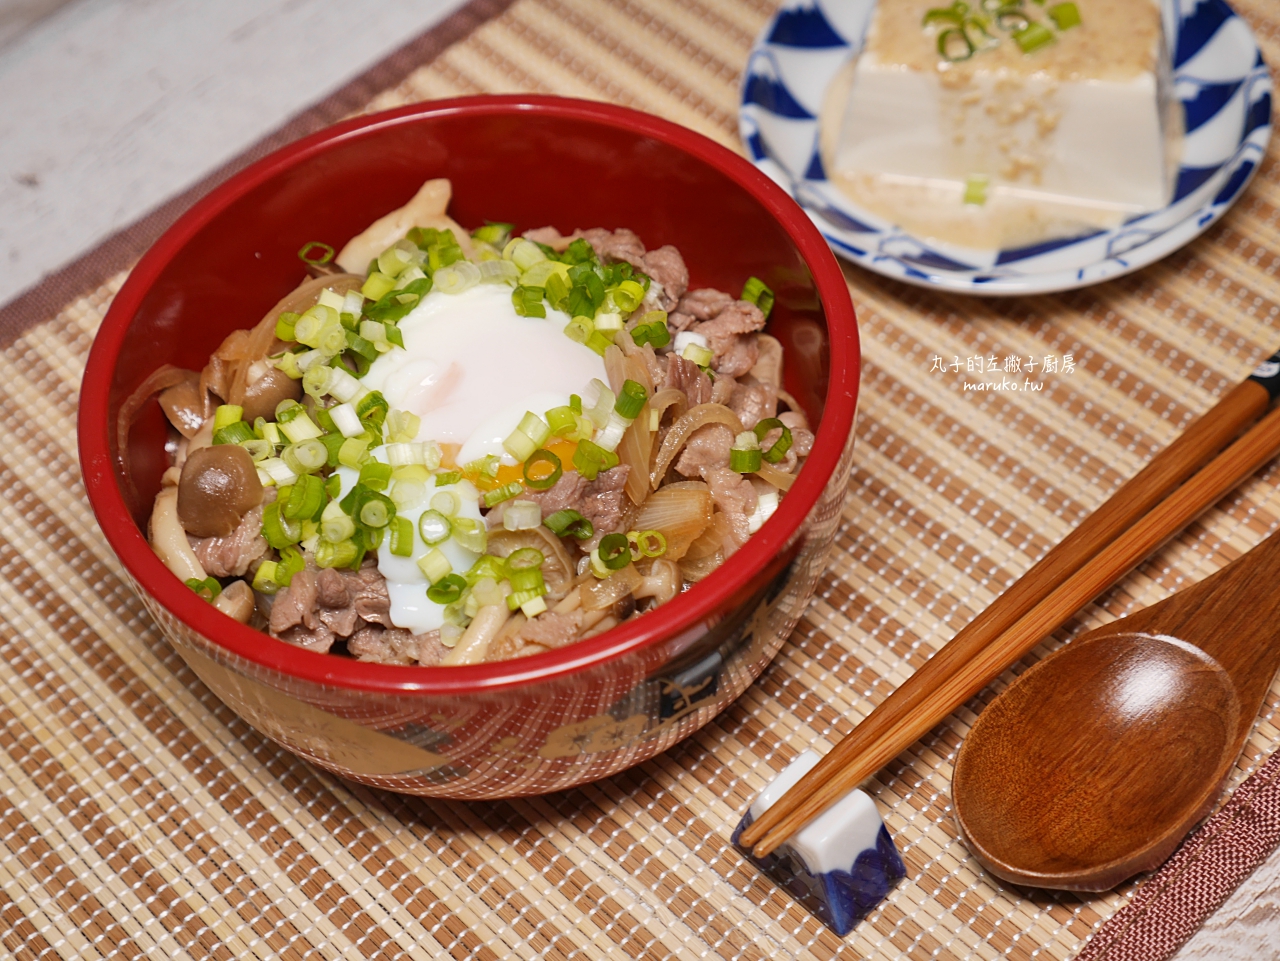 食譜 牛丼簡單醬汁做日式牛肉蓋飯10分鐘上菜快速晚餐做法 Maruko與美食有個約會